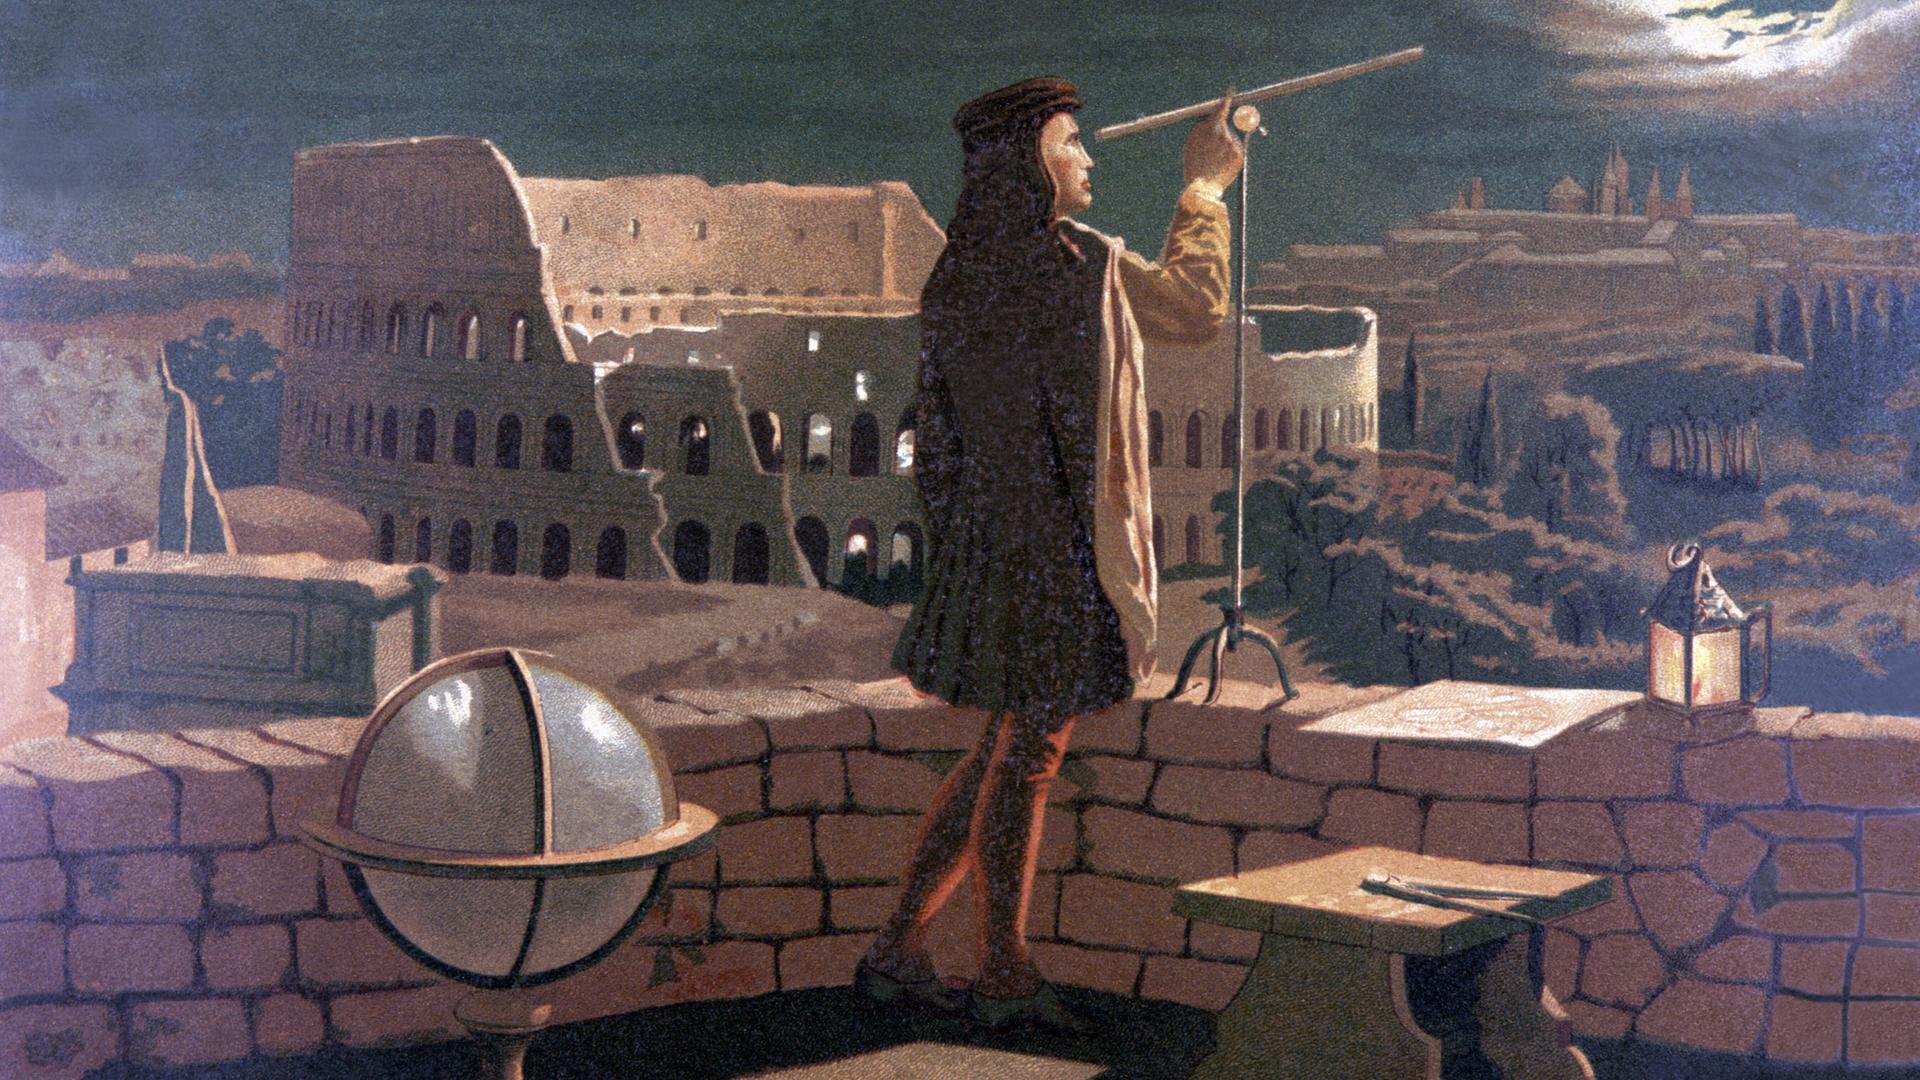 Gemälde, das Kopernikus bei der nächtlichen Sternenbeobachtung in Rom zeigt. Kopernikus steht auf einem steinernen Balkon. Er blickt durch ein Fernglas auf den hell leuchtenden Mond. Im Hintergrund ist das römische Kolosseum zu sehen.